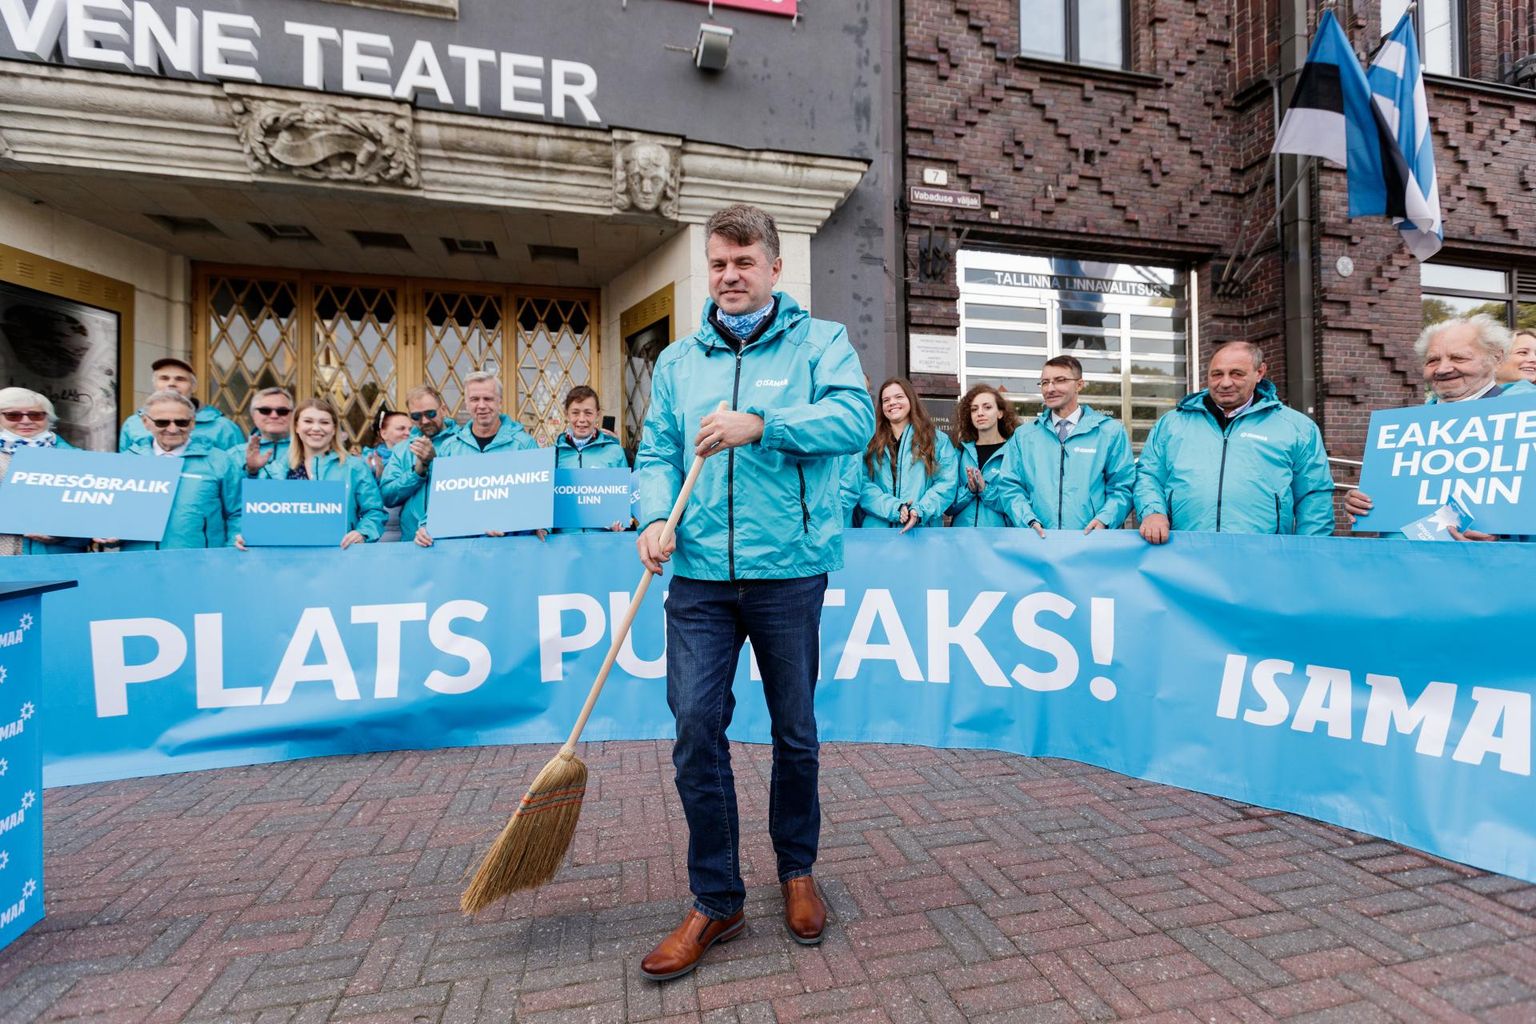 Loosungiga «Plats puhtaks!» läheb hääli püüdma Isamaa, partei Tallinna linnapeakandidaat on Urmas Reinsalu.